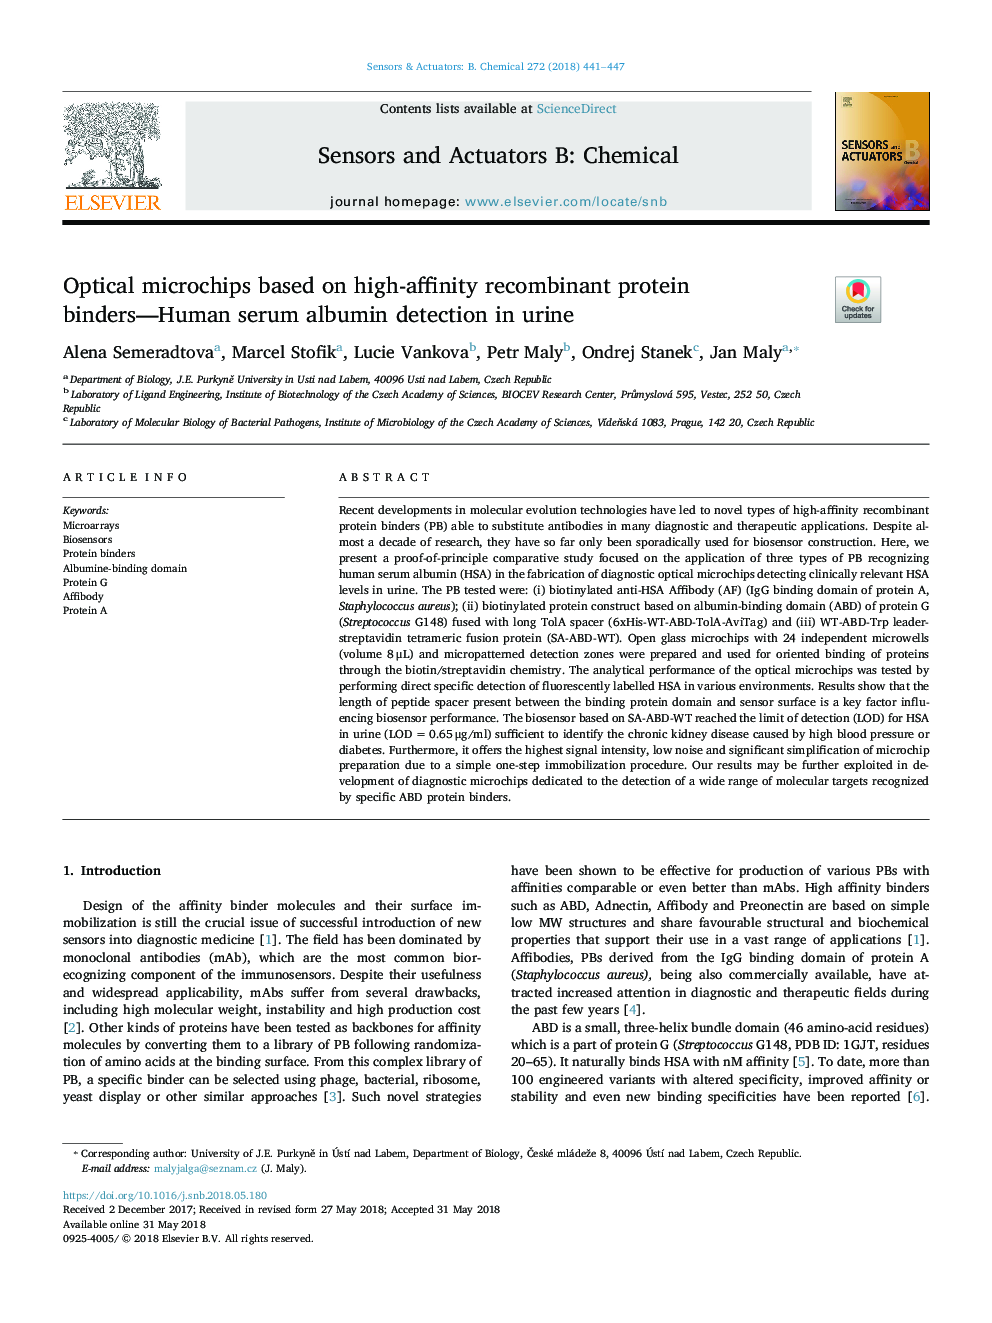 ریزپردازنده های نوری بر اساس پیوند های پروتئینی نوترکیب با محتوای بالا - تشخیص آلبومین سرم انسان در ادرار 